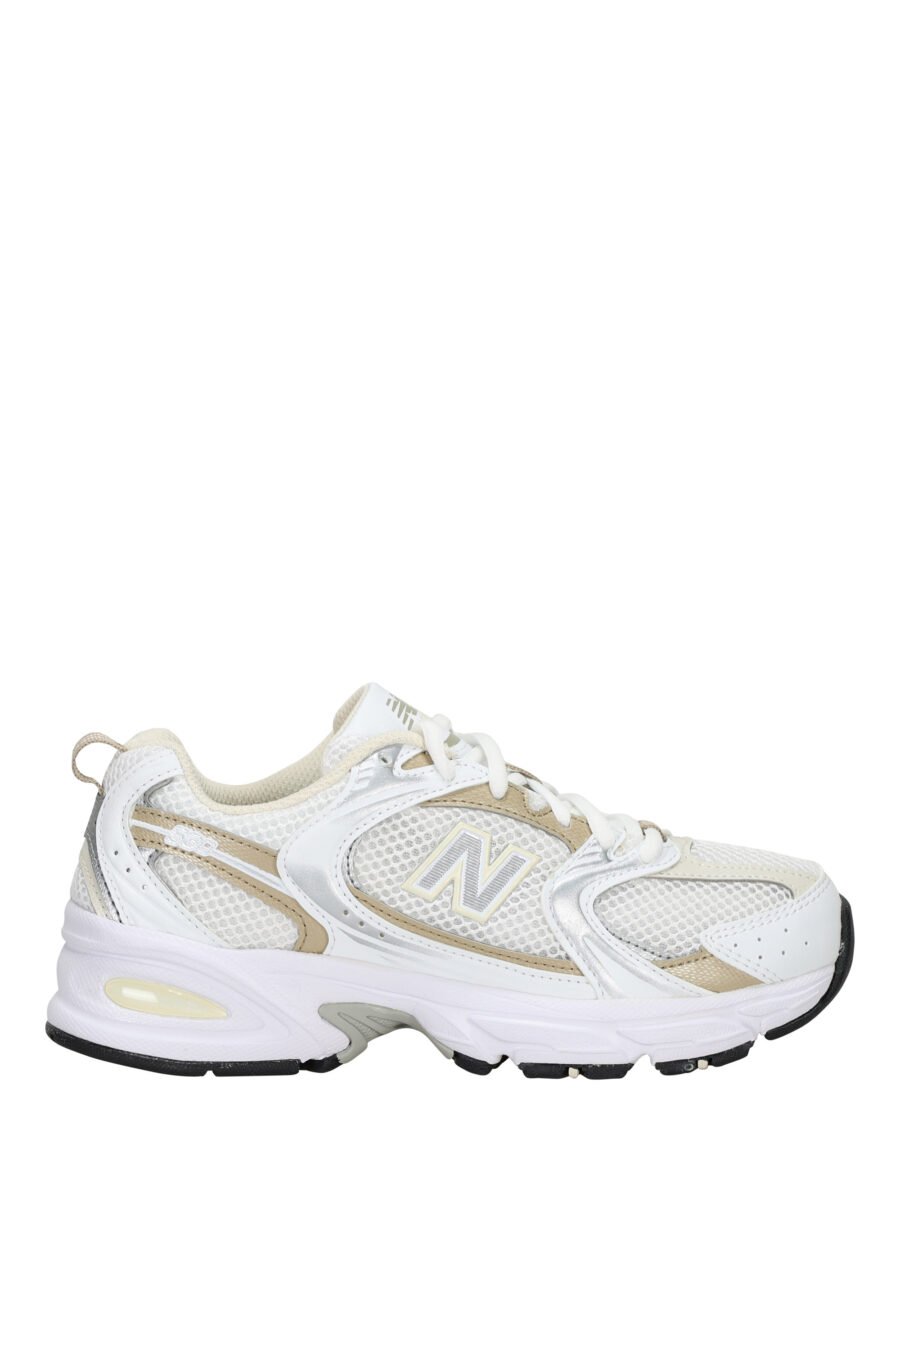 Zapatillas blancas con detalles dorados "530" y logo "N" blanco - 197375712635